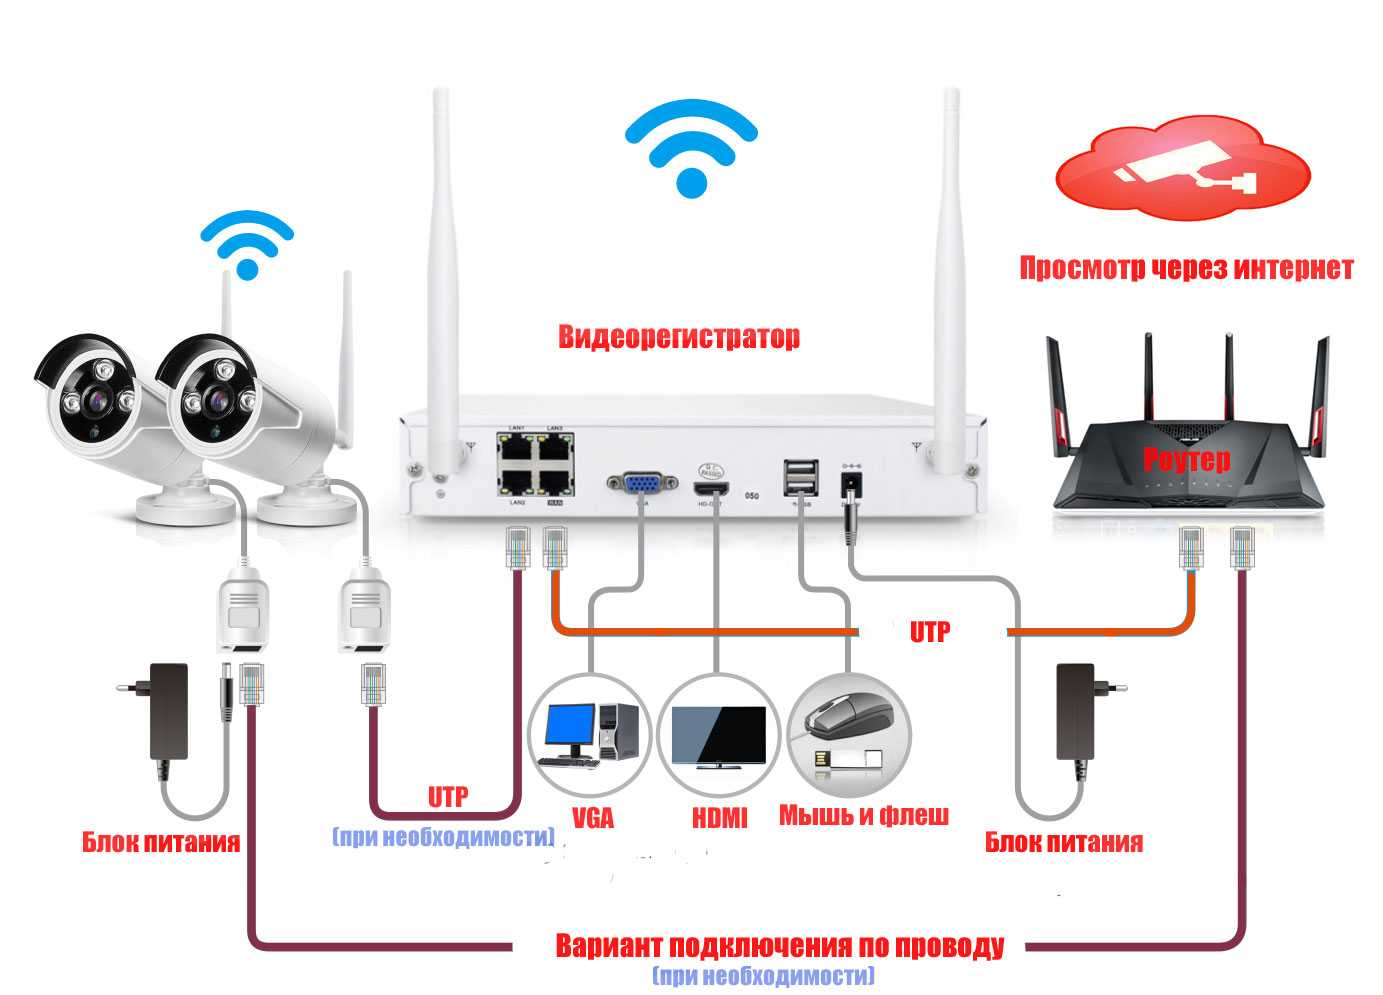 Организация системы видеонаблюдения на даче самостоятельно с использованием 3g маршрутизатора: советы по выбору, установке и настройке оборудования